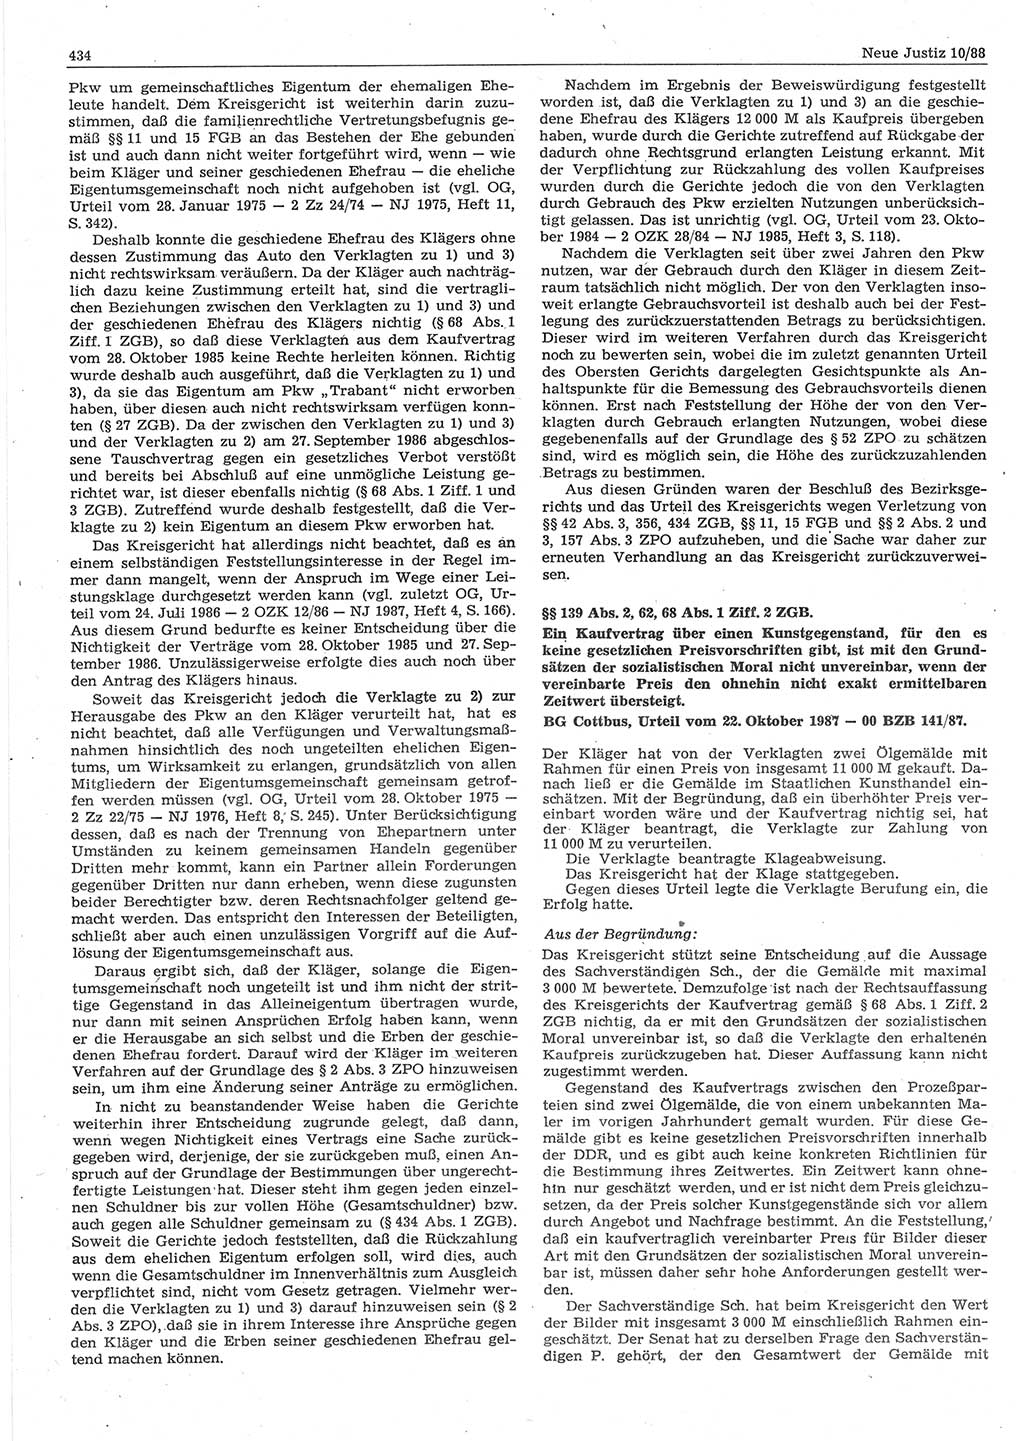 Neue Justiz (NJ), Zeitschrift für sozialistisches Recht und Gesetzlichkeit [Deutsche Demokratische Republik (DDR)], 42. Jahrgang 1988, Seite 434 (NJ DDR 1988, S. 434)